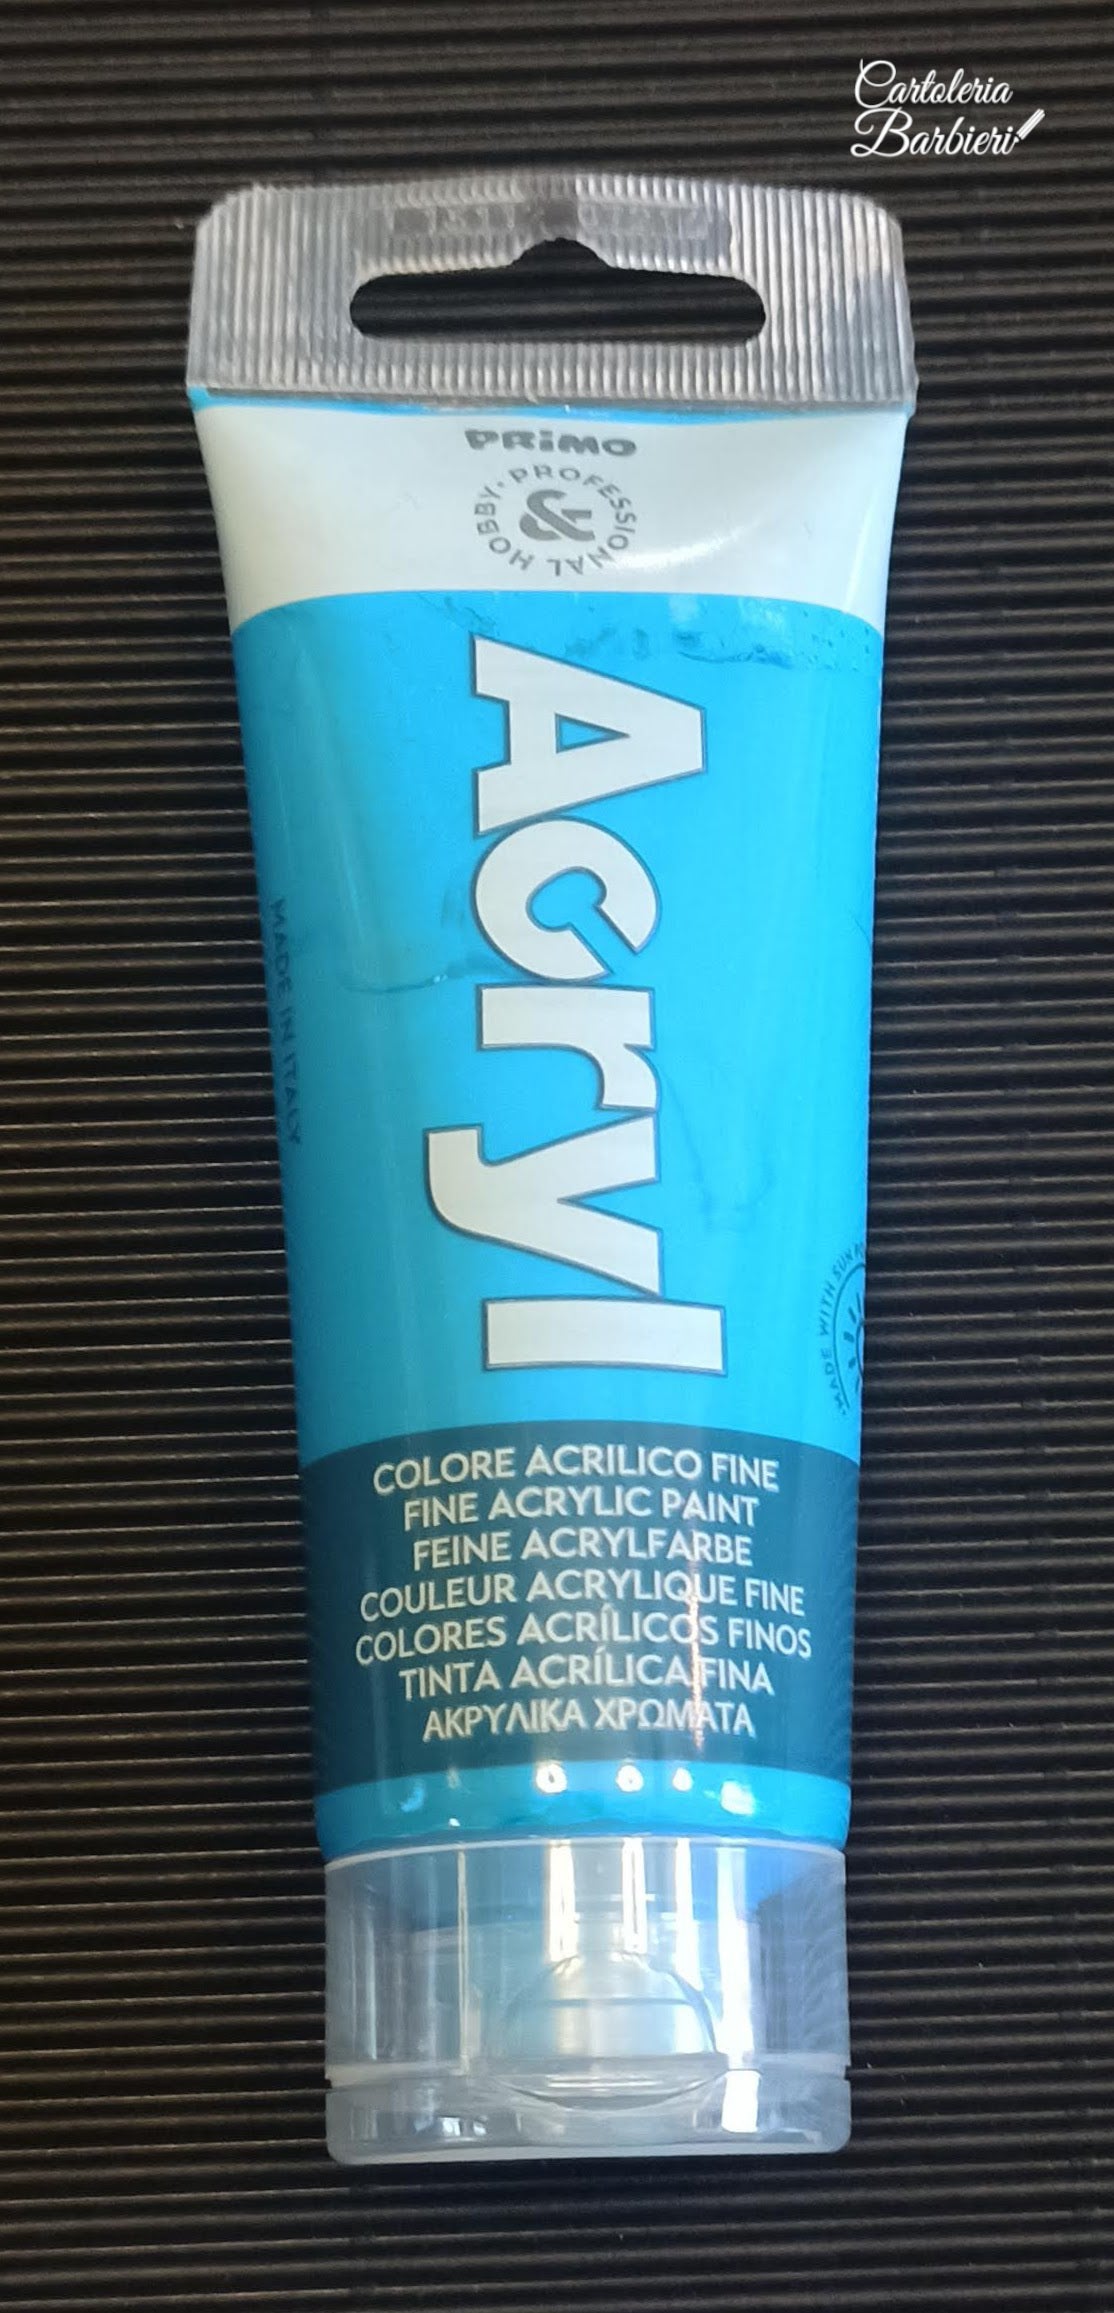 PRIMO Colore acrilico fine in tubetto da 75 ml (Sfusi)